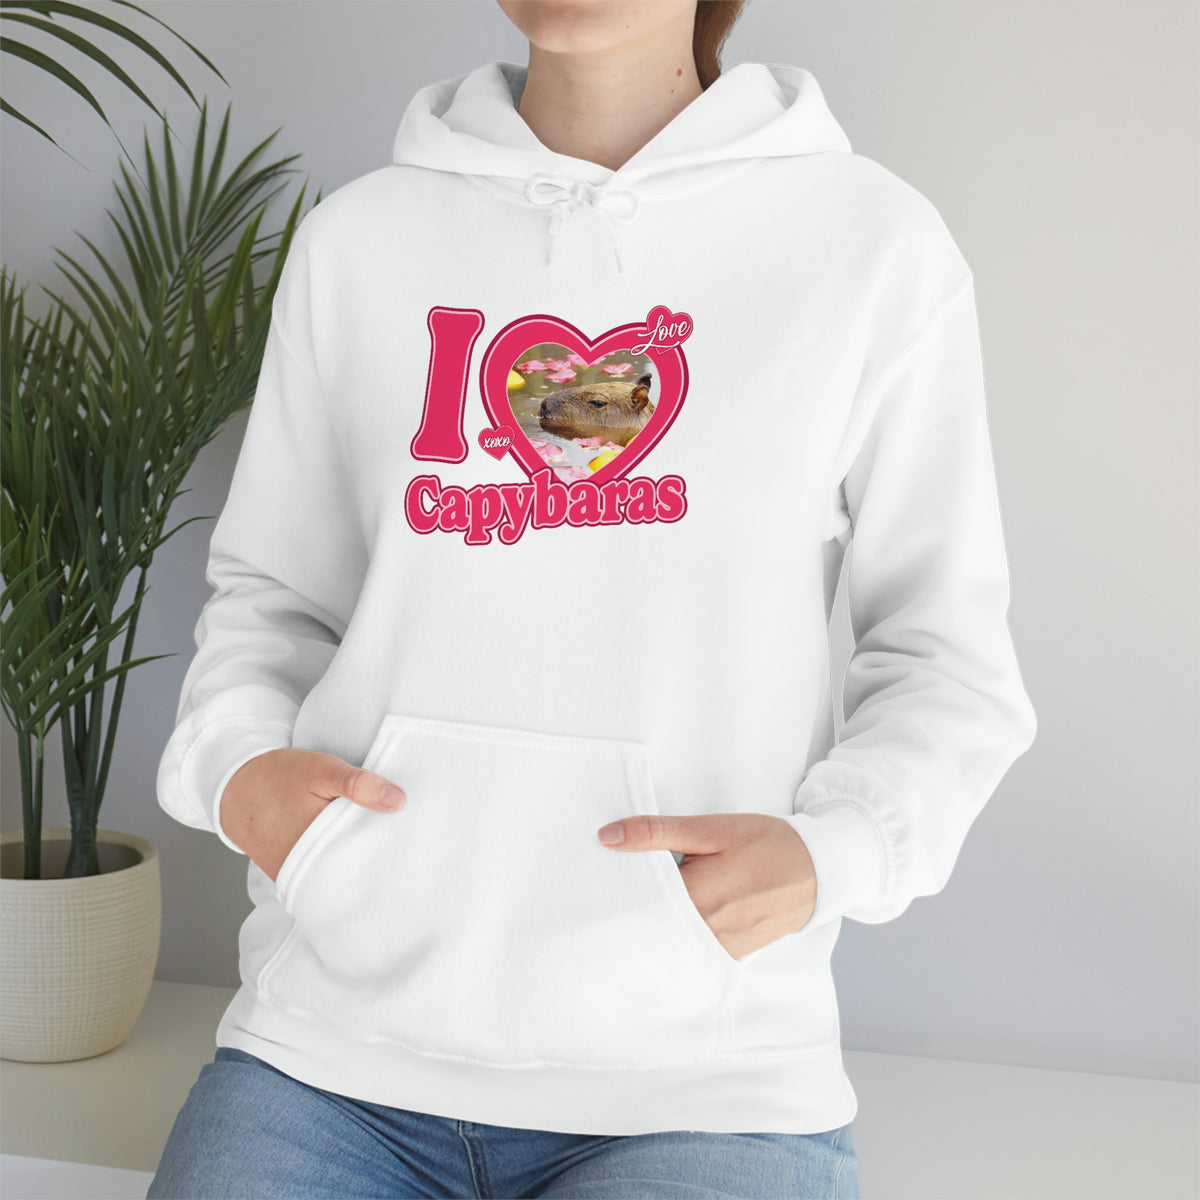 I love capybaras - Unisex Hoodie